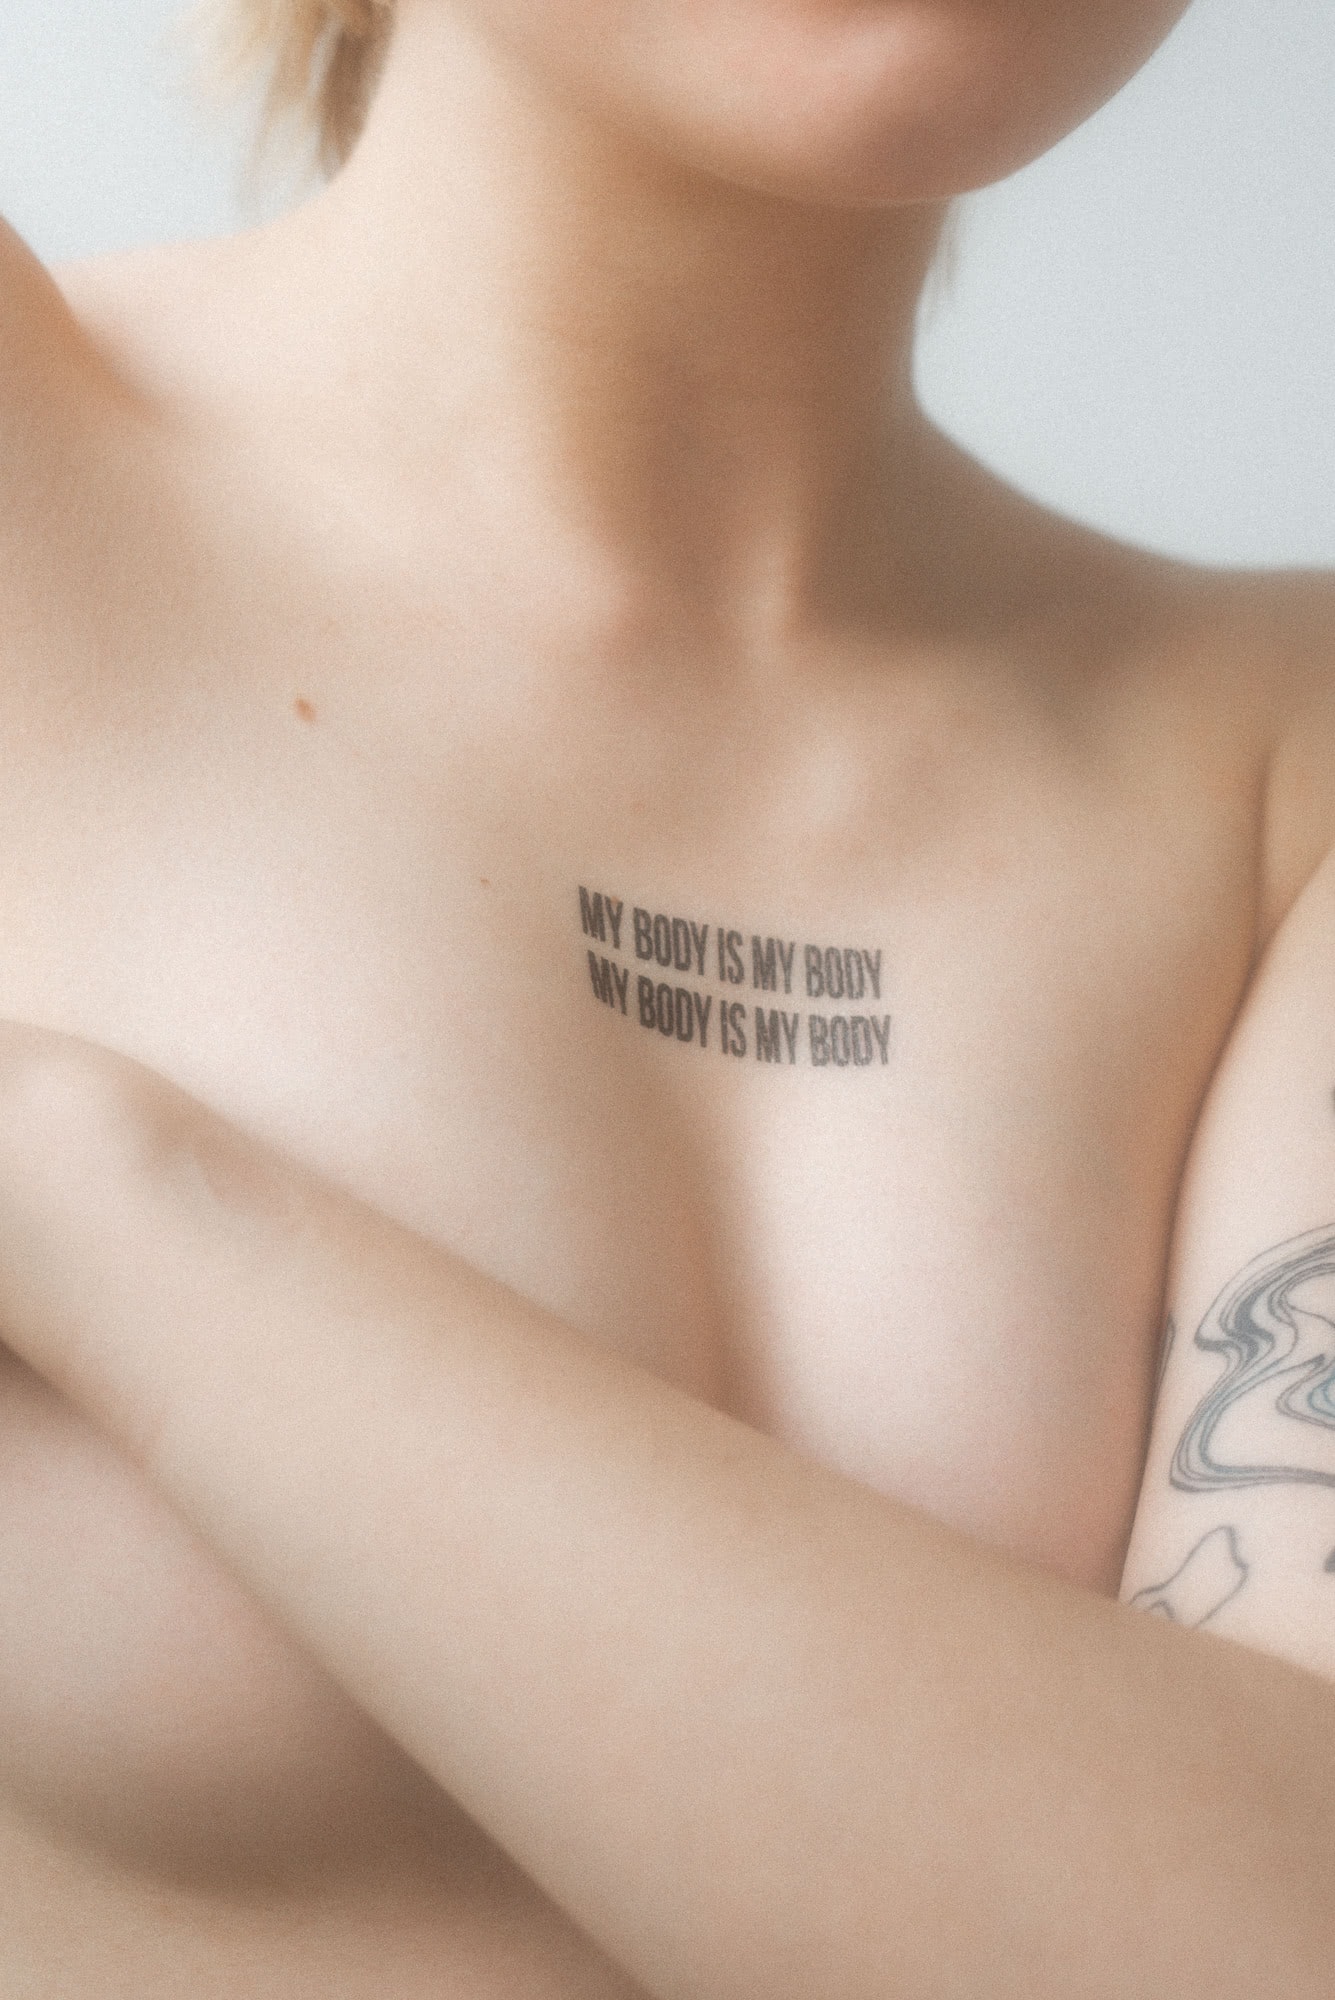 Naga osoba z tatuażem nad piersiami - My body is my body - czyli - Moje ciało jest moje.